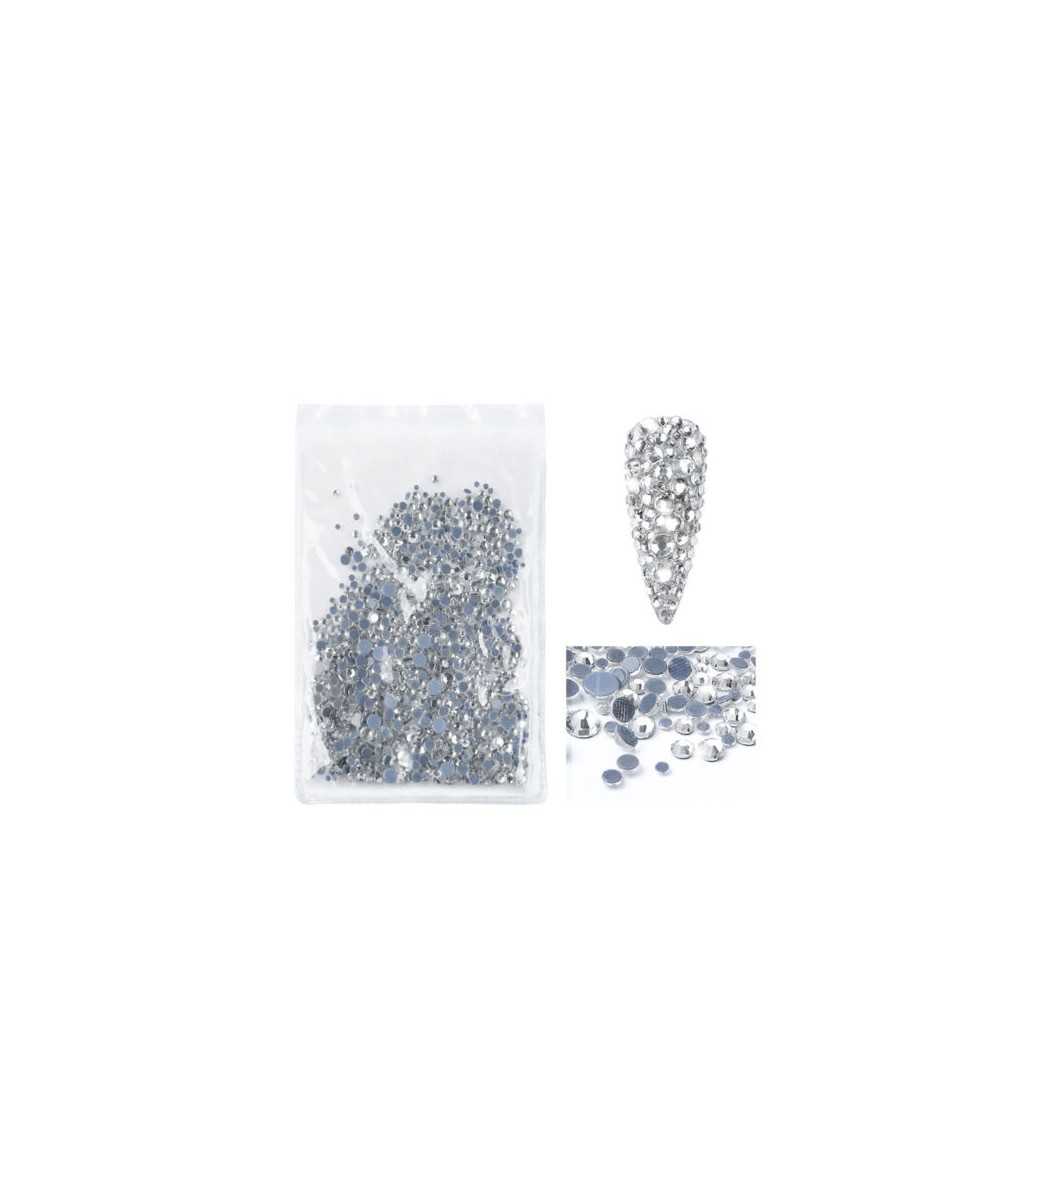 διακοσμητικα στρασακια νυχιων 550 τεμαχια , τυπου Swarovski strass crystal